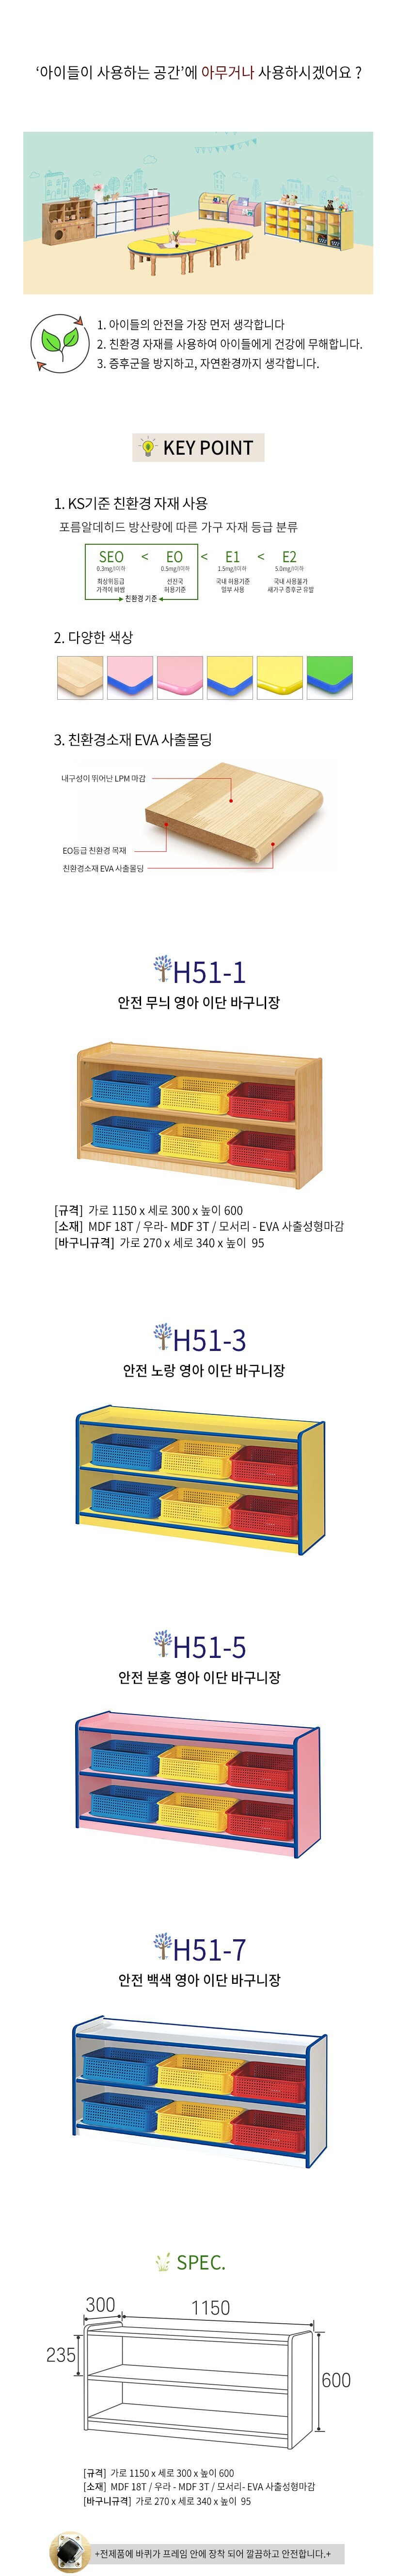 안전 분홍 영아 어린이 이단 바구니장 H51-5 